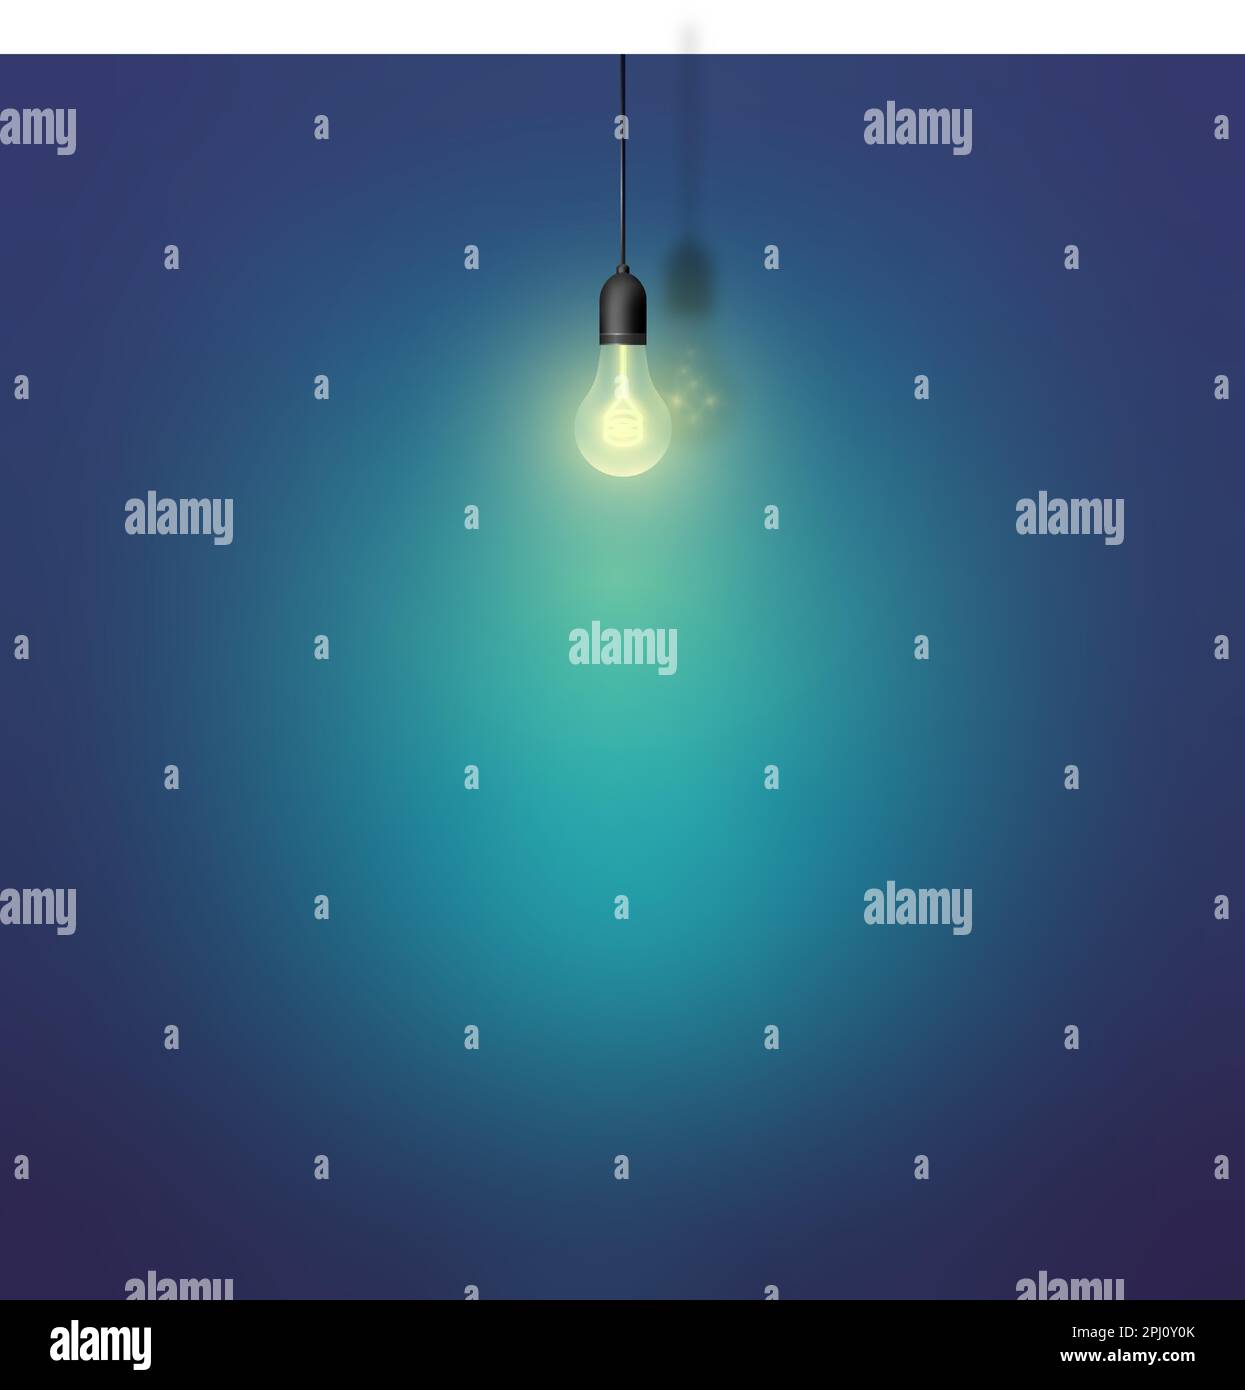 Abbildung: Aufhängen einer Glühlampe an der Wand. Glühbirne mit Lichtpunkt an der Wand. Vorlage für Text. Stock Vektor